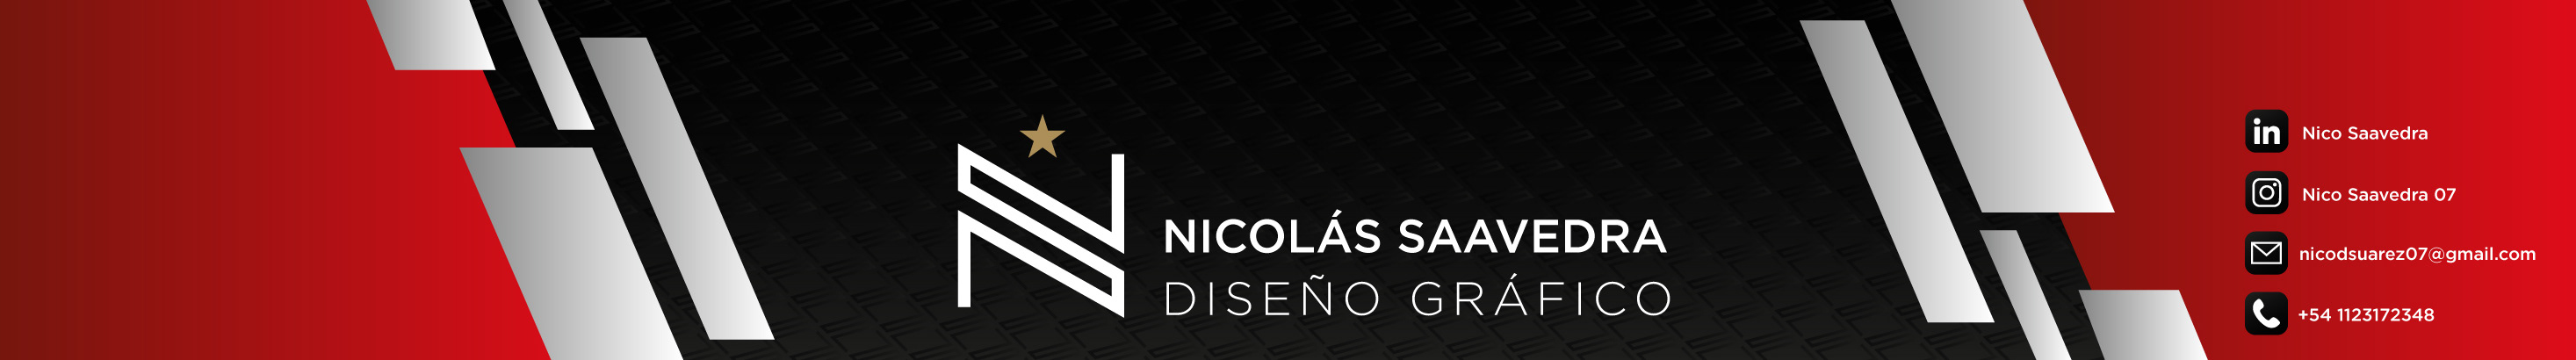 Profil-Banner von Nico Saavedra 07